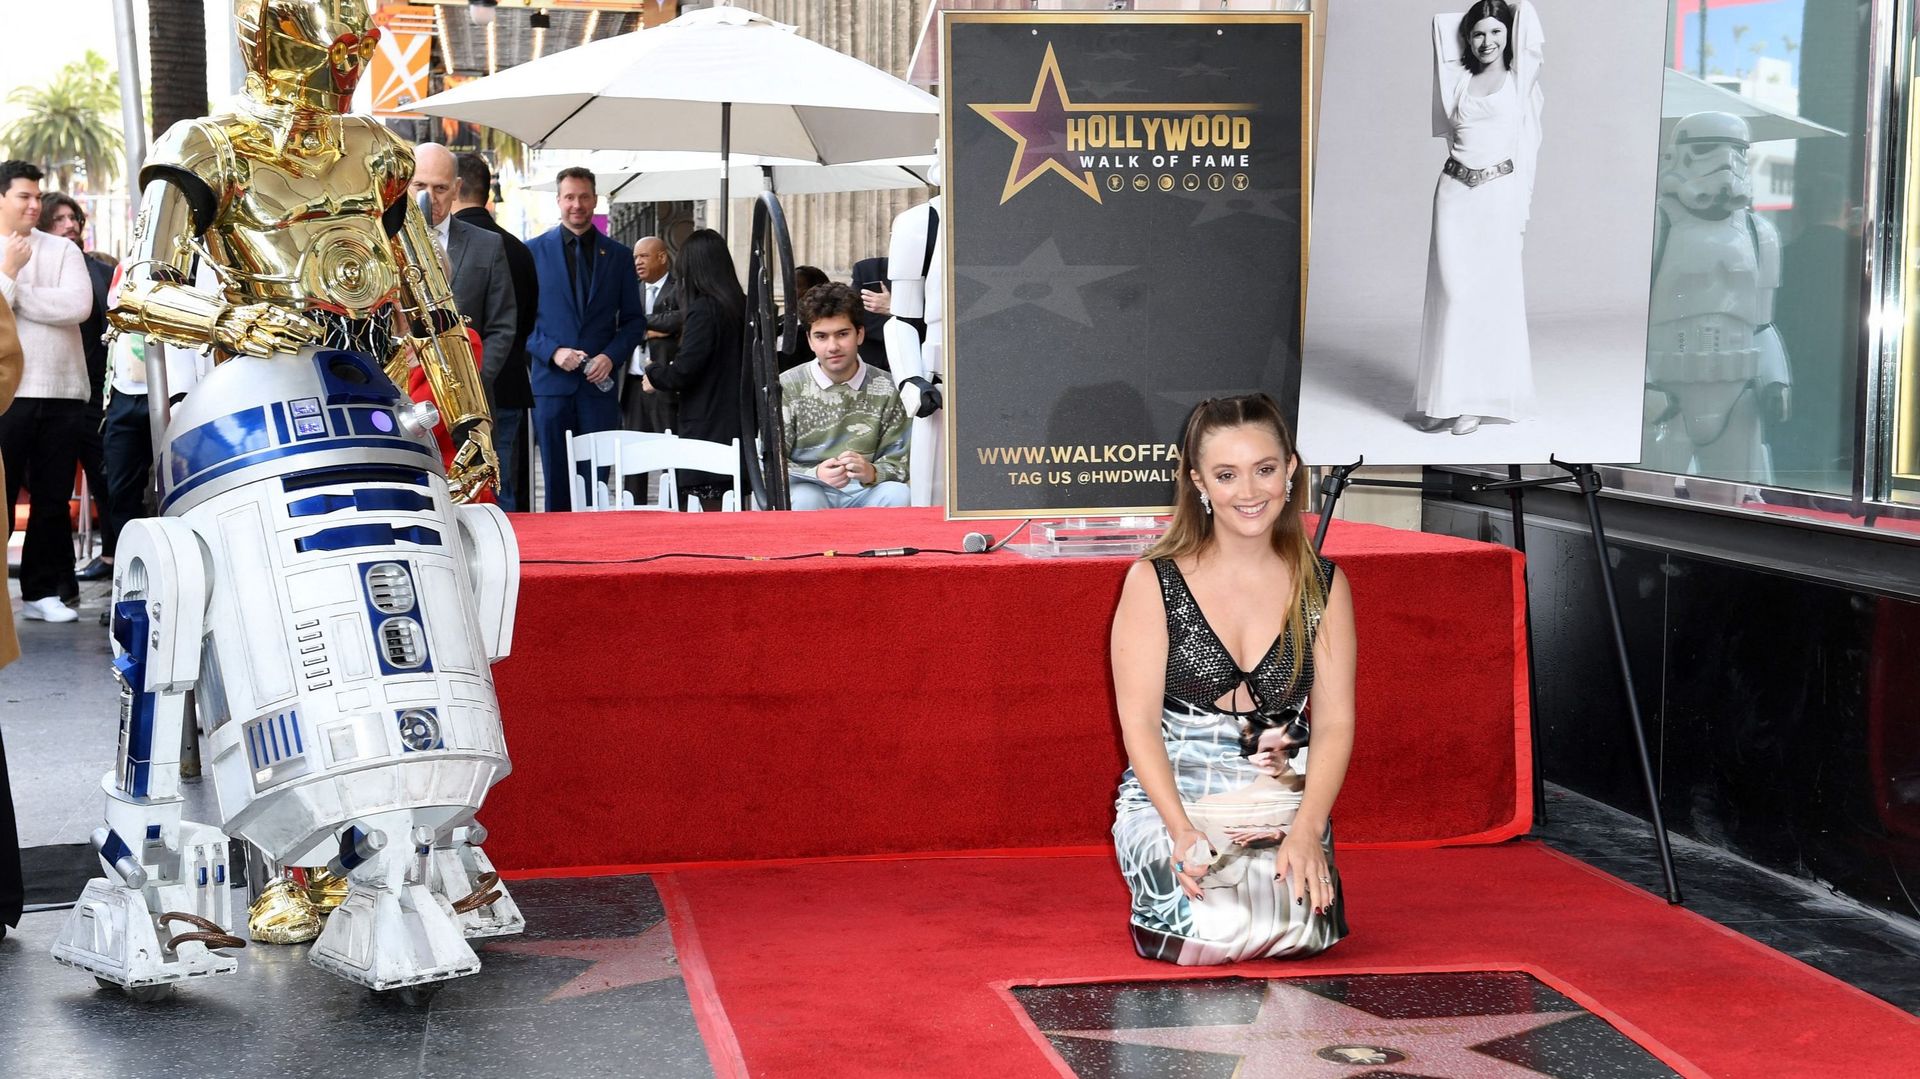 L’actrice et fille de Carrie Fisher, Billie Lourd, pose devant l’étoile posthume de sa mère sur le Hollywood Walk of Fame.